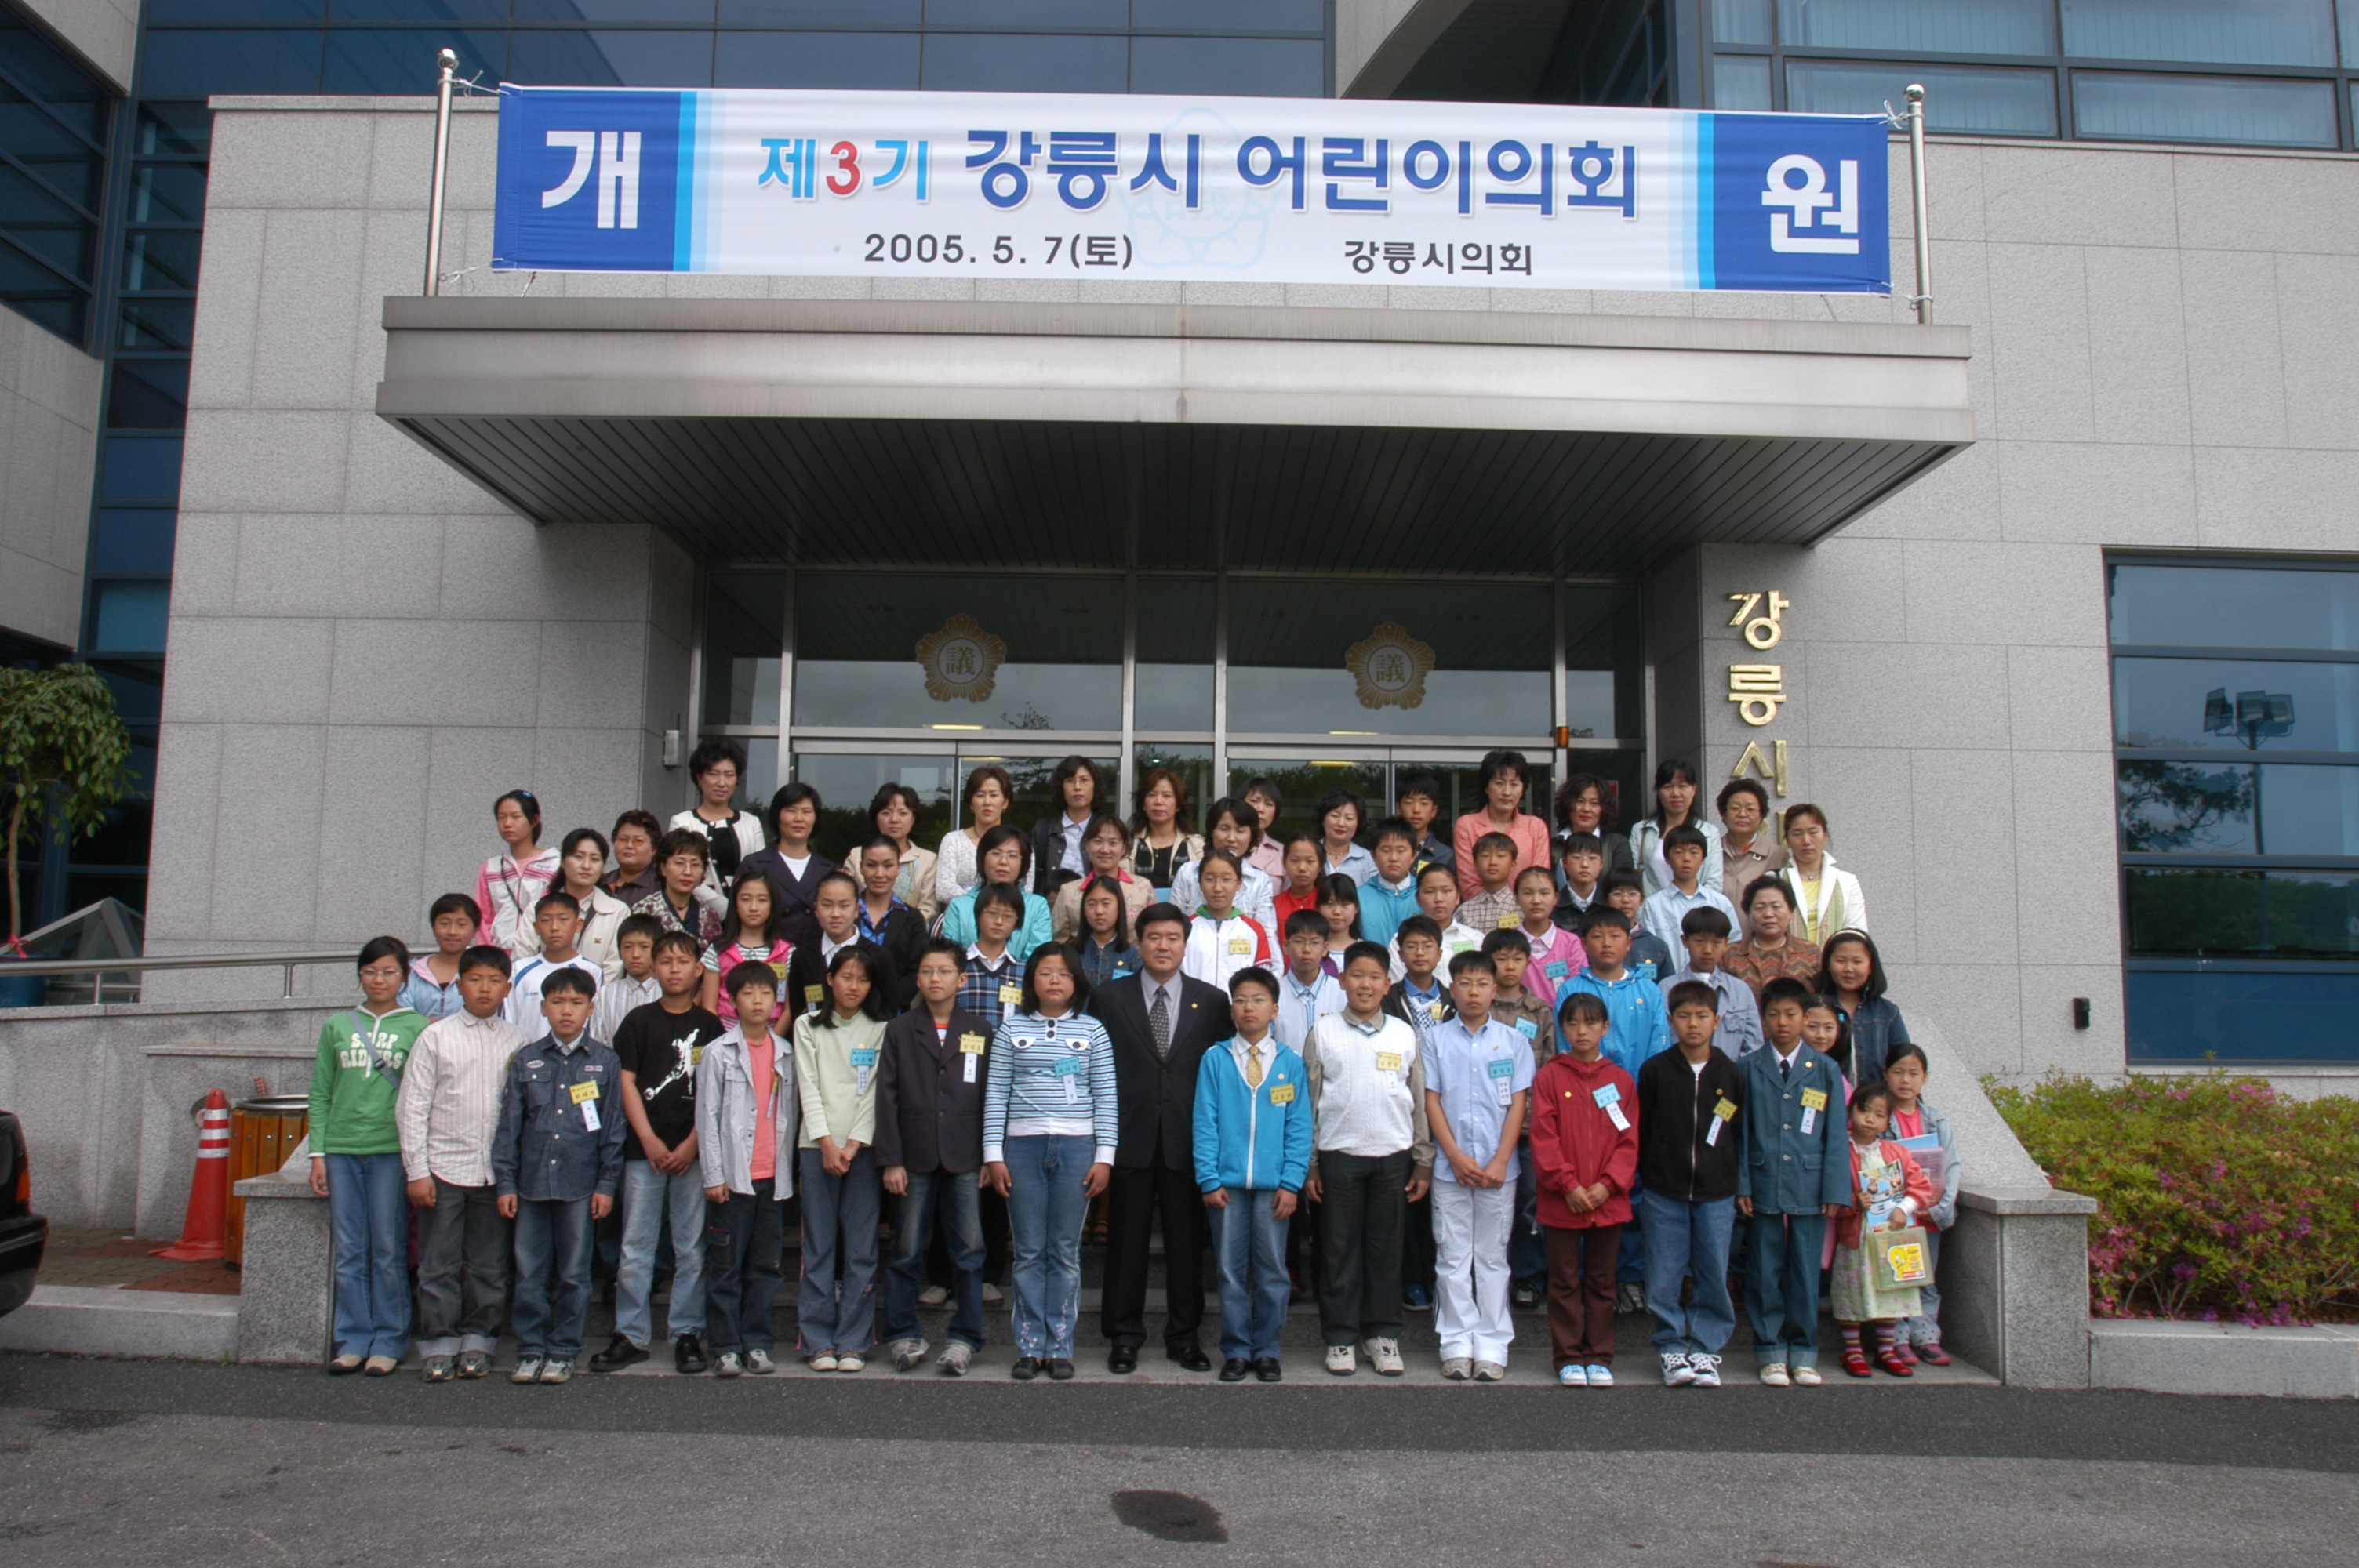 제3회 어린이의회(2005. 5. 7) 대표이미지